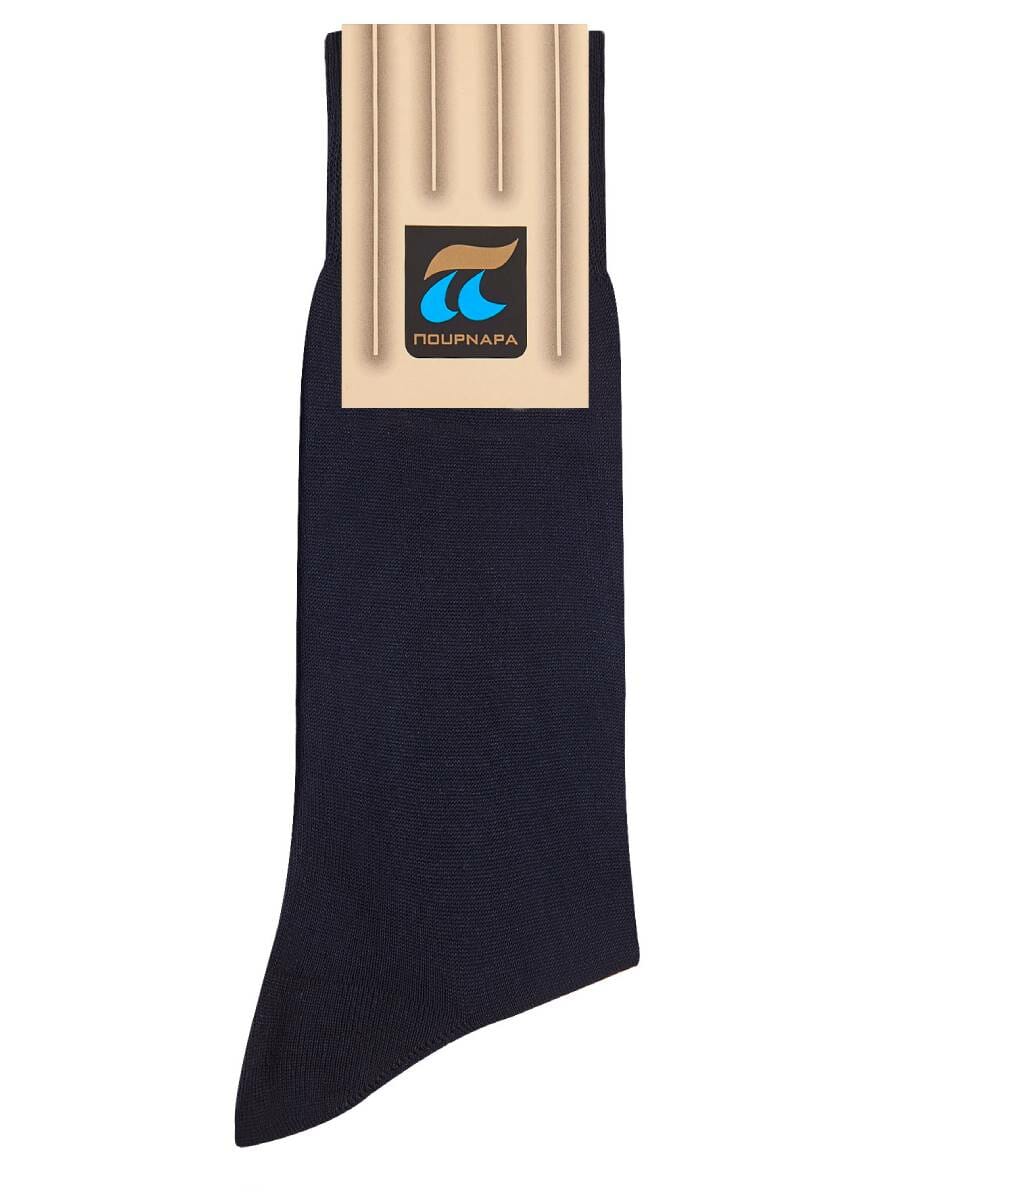 Ανδρική μπλε βαμβακερή κάλτσα Πουρνάρας 1+1 ΔΩΡΟ Κωδ. 101-15 P101 Μπλε